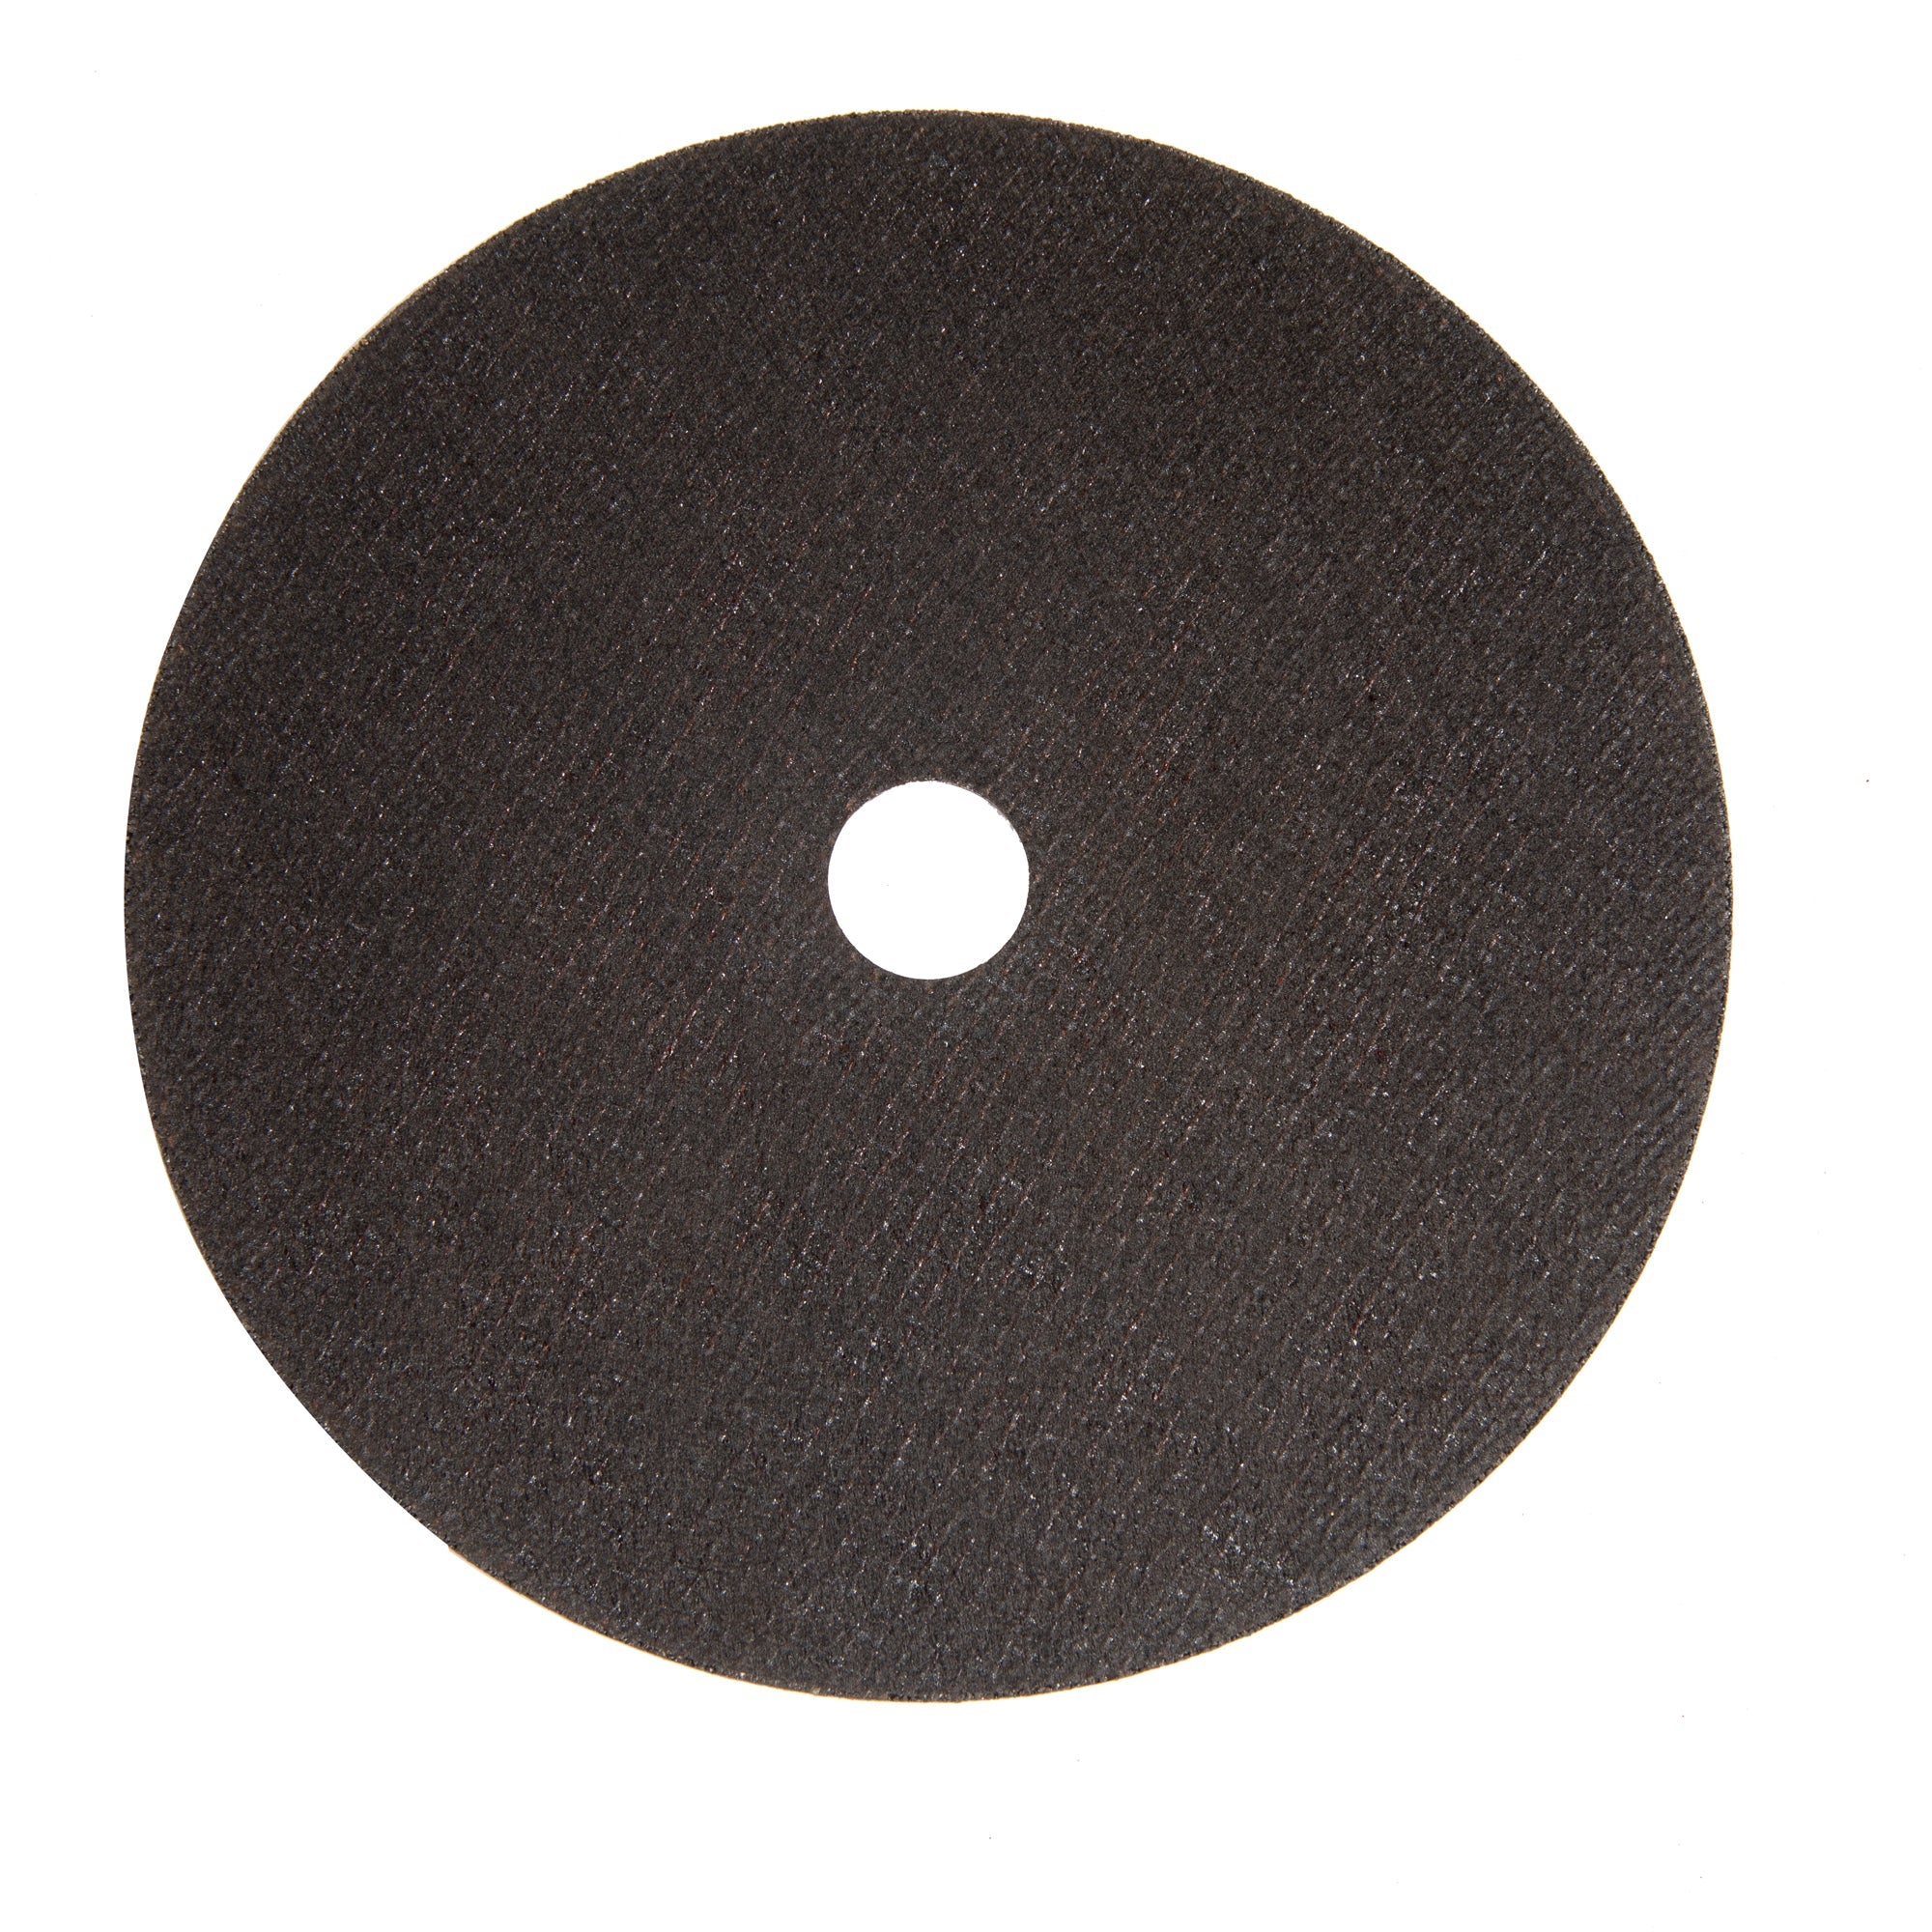 Комплект 10 бр. абразивен диск за метал с диаметър 180 MM DETOOLZ